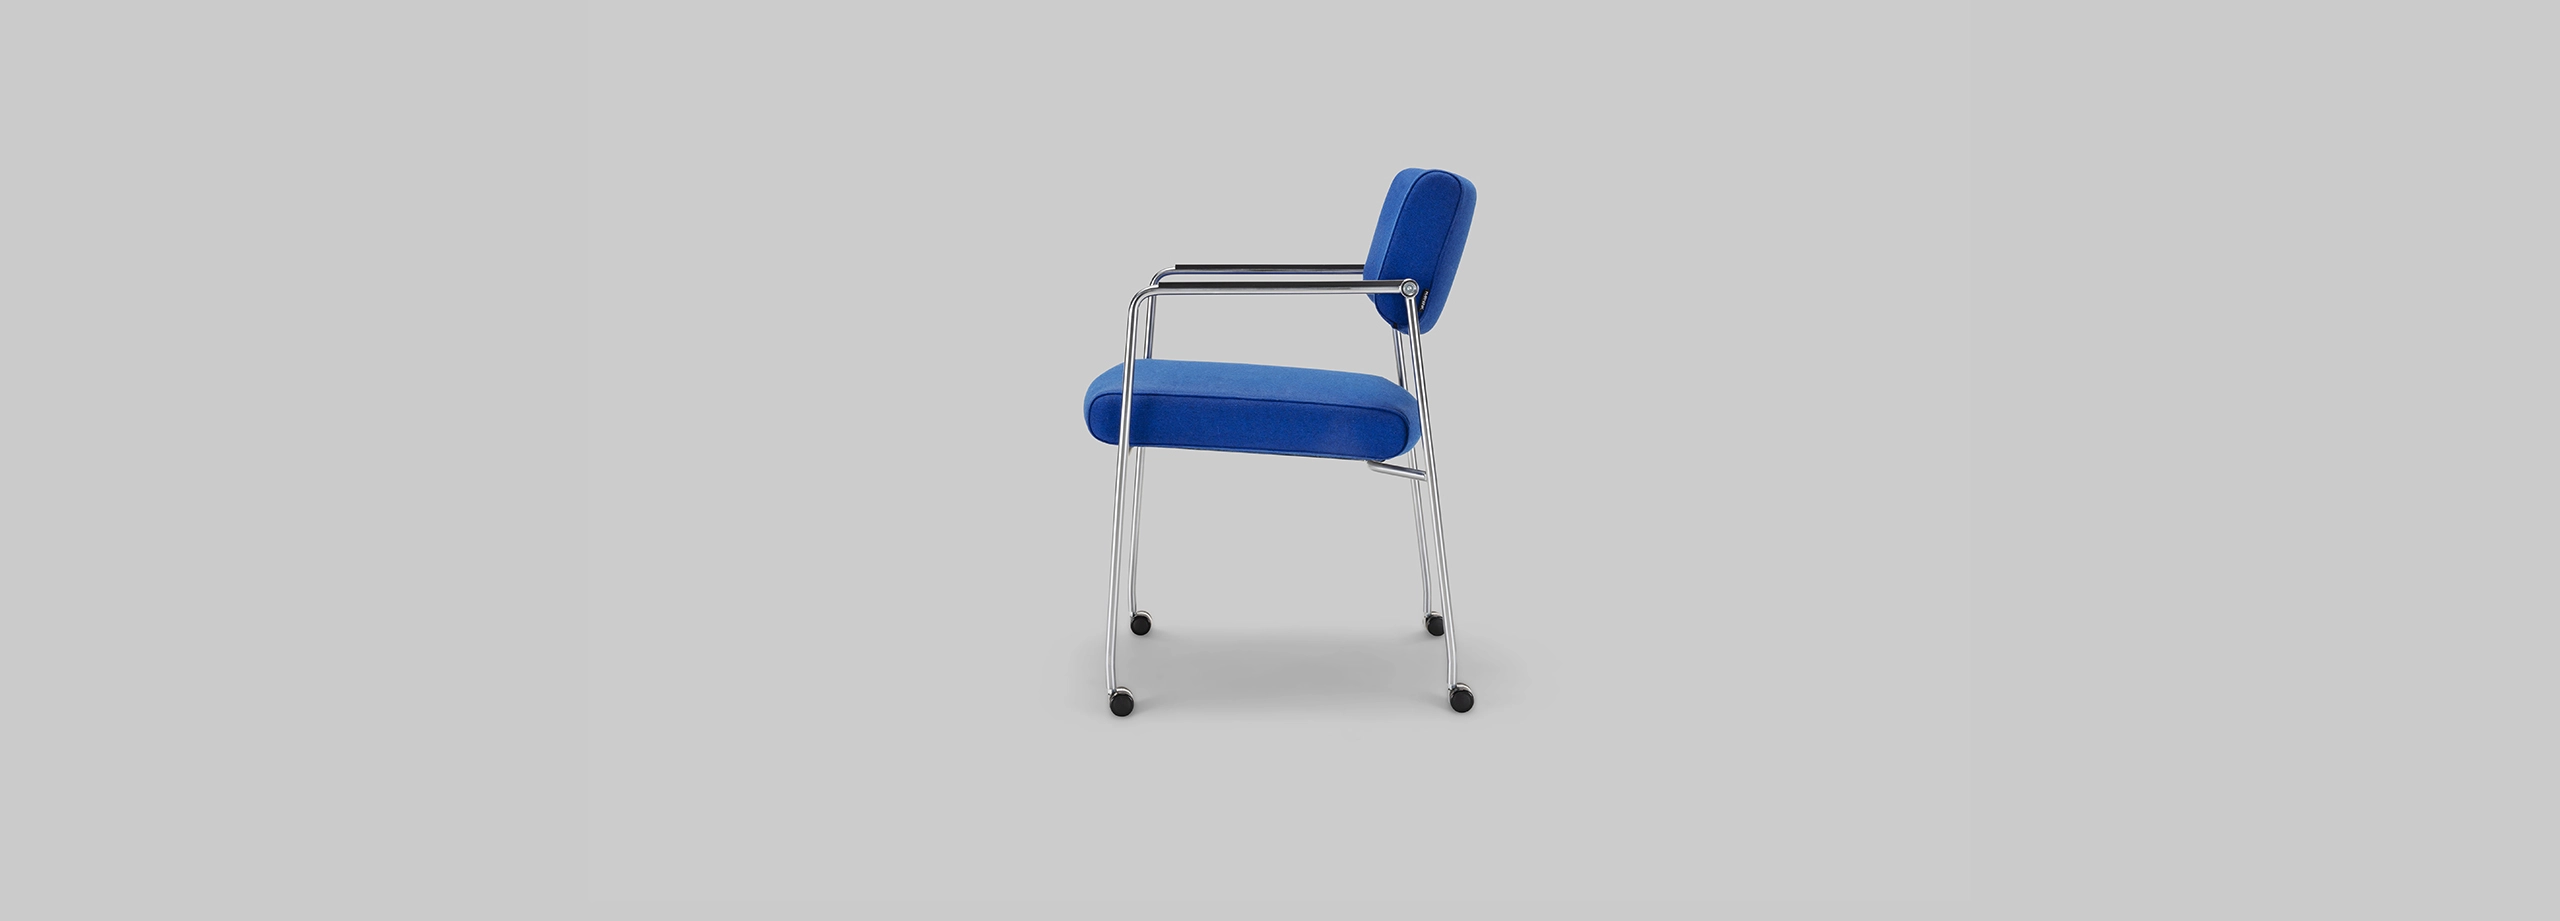 Harvink Duck stoel roller tonica blauw